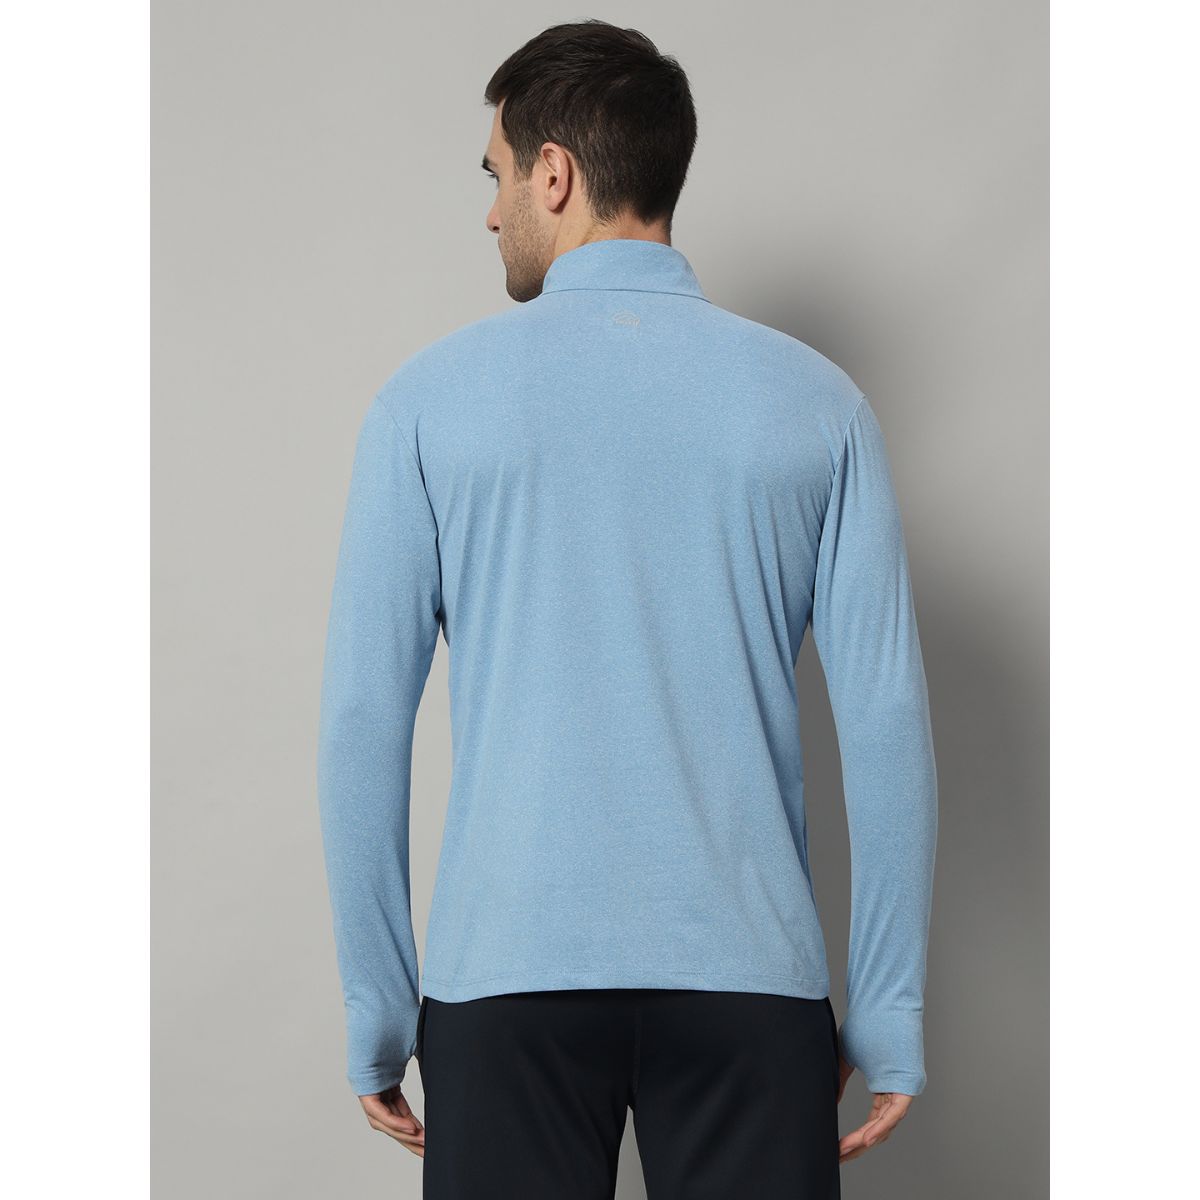 Men's Nomadic Full Sleeves T-Shirt / Baselayer - Lichen Blue 3